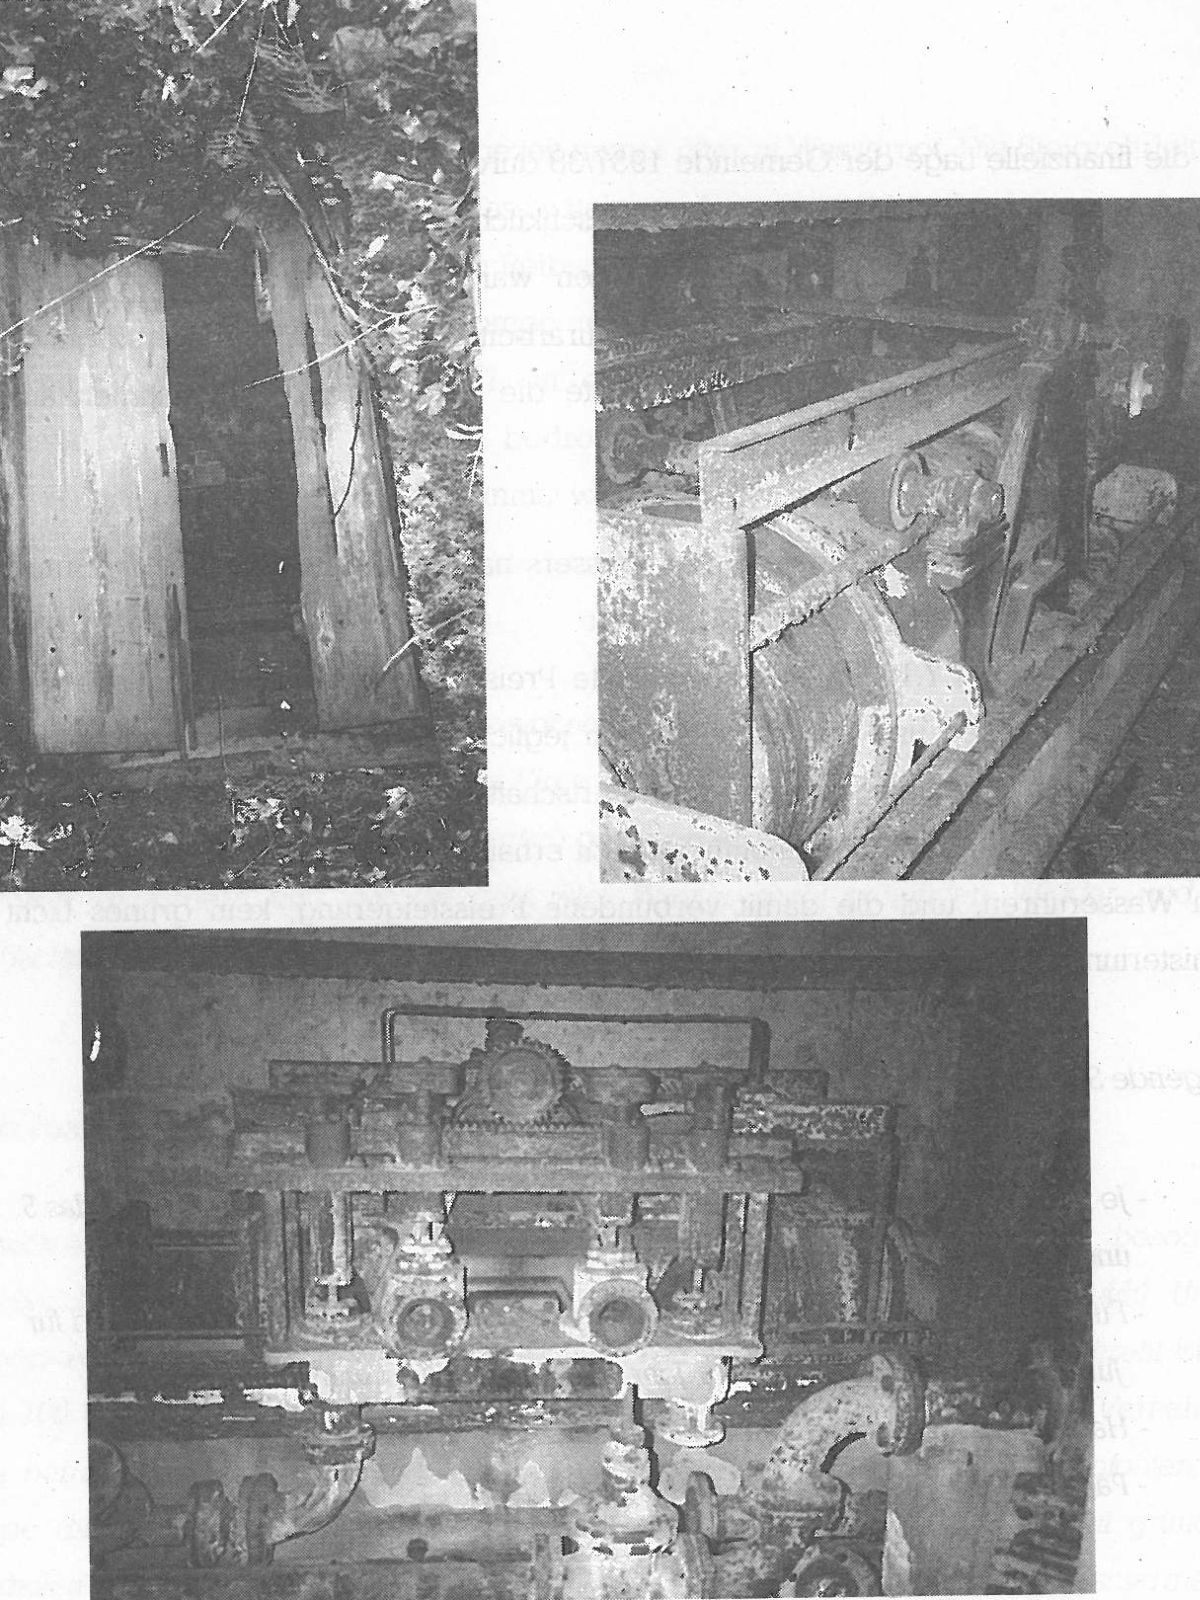  Schopflocher Skizzen Eingang zu Pumpenhäuschen und Überreste der Lambachpumpe - Bild wird mit einem klick vergrößert 